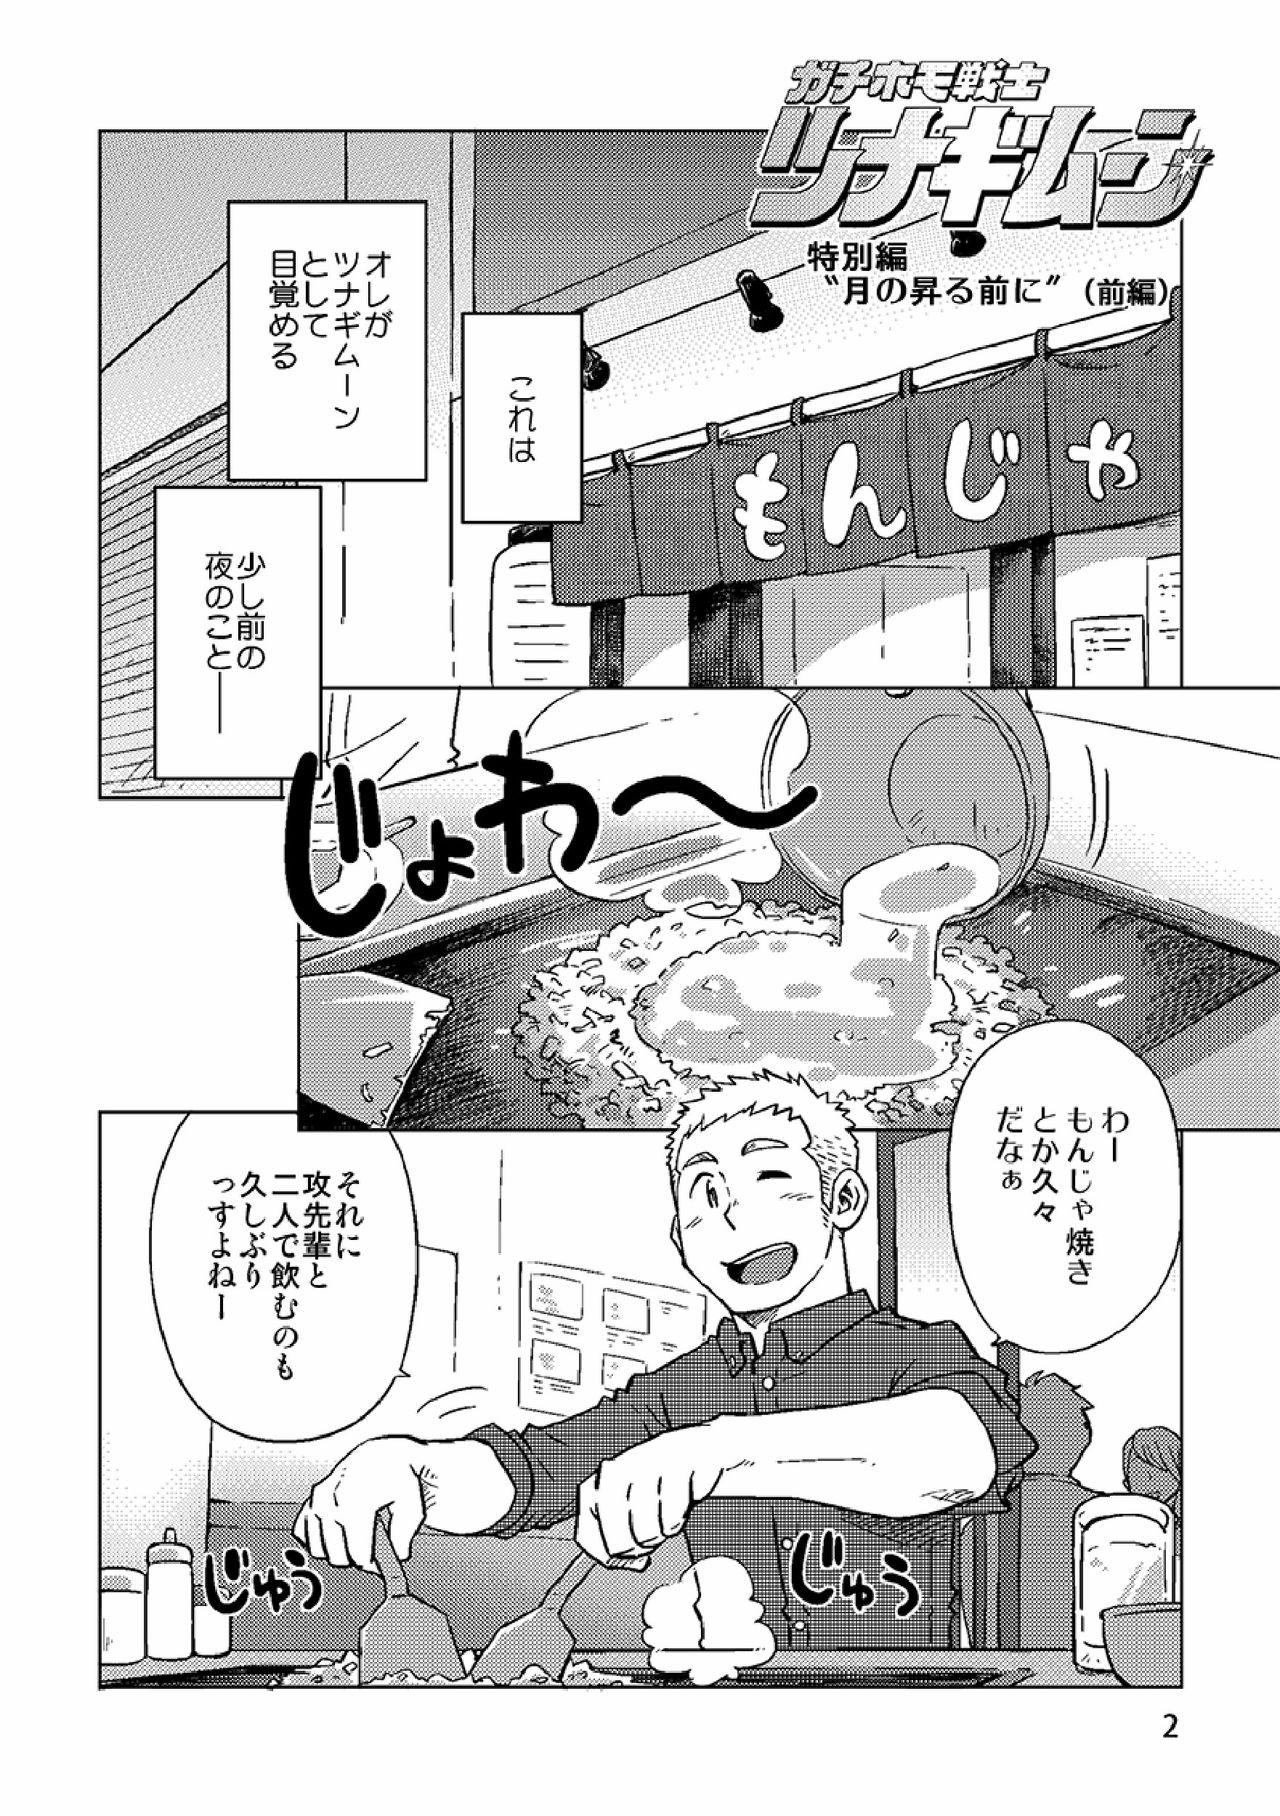 High Gachi Homo Senshi Tsunagi Moon Tokubetsuhen Tsuki no Noboru Maeni - Original Arabe - Page 3